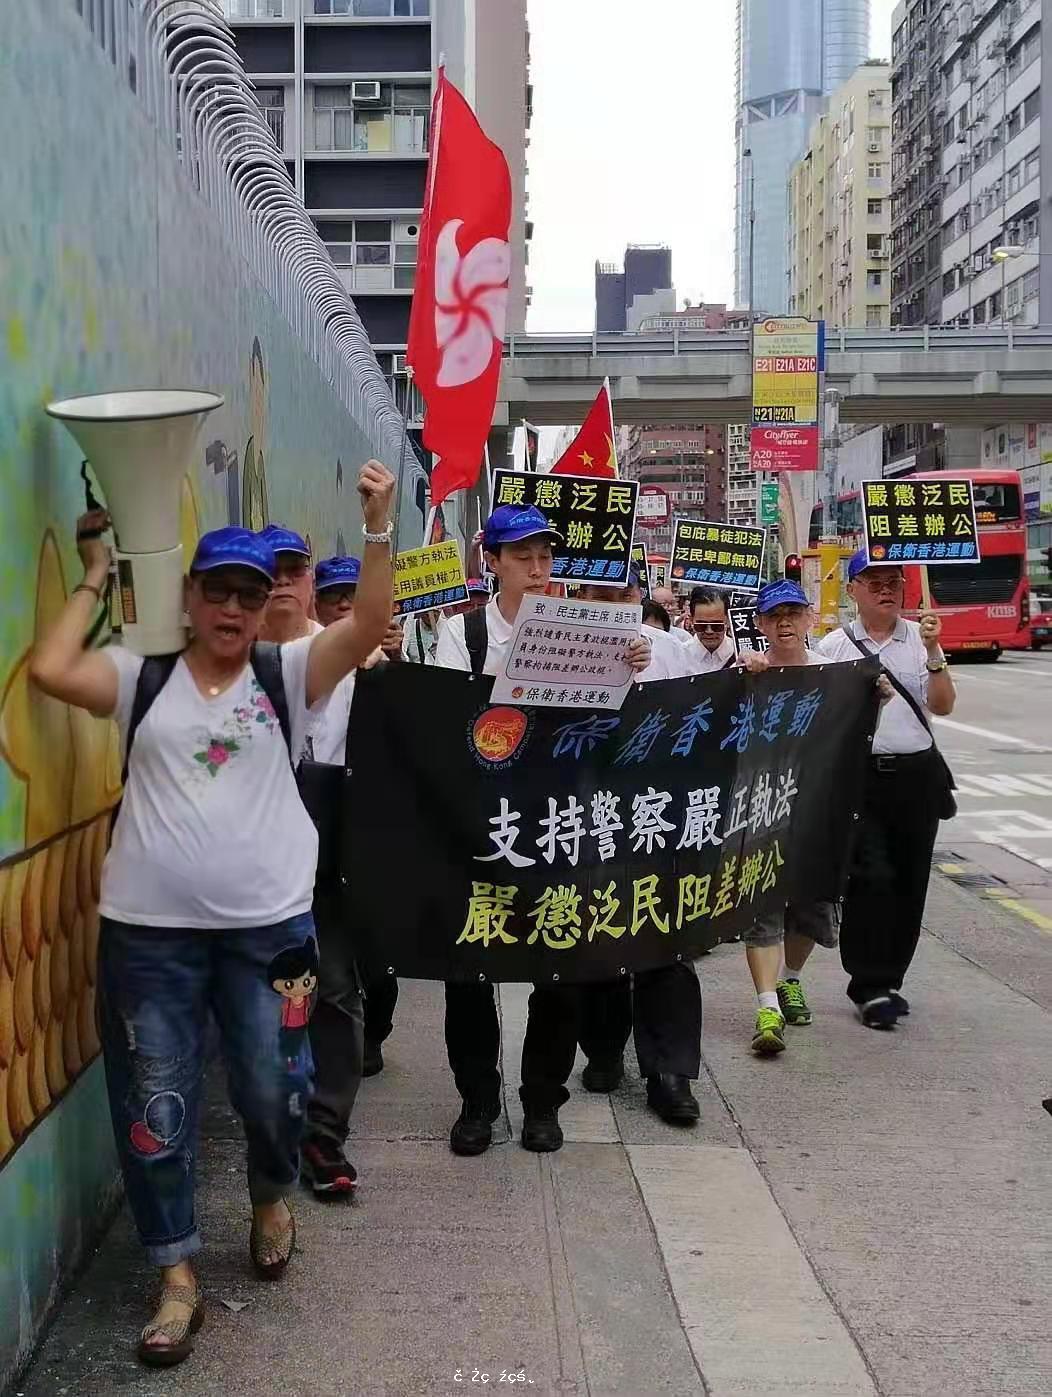 保衛香港運動 主辦「嚴懲泛民阻差辦公」遊行集會